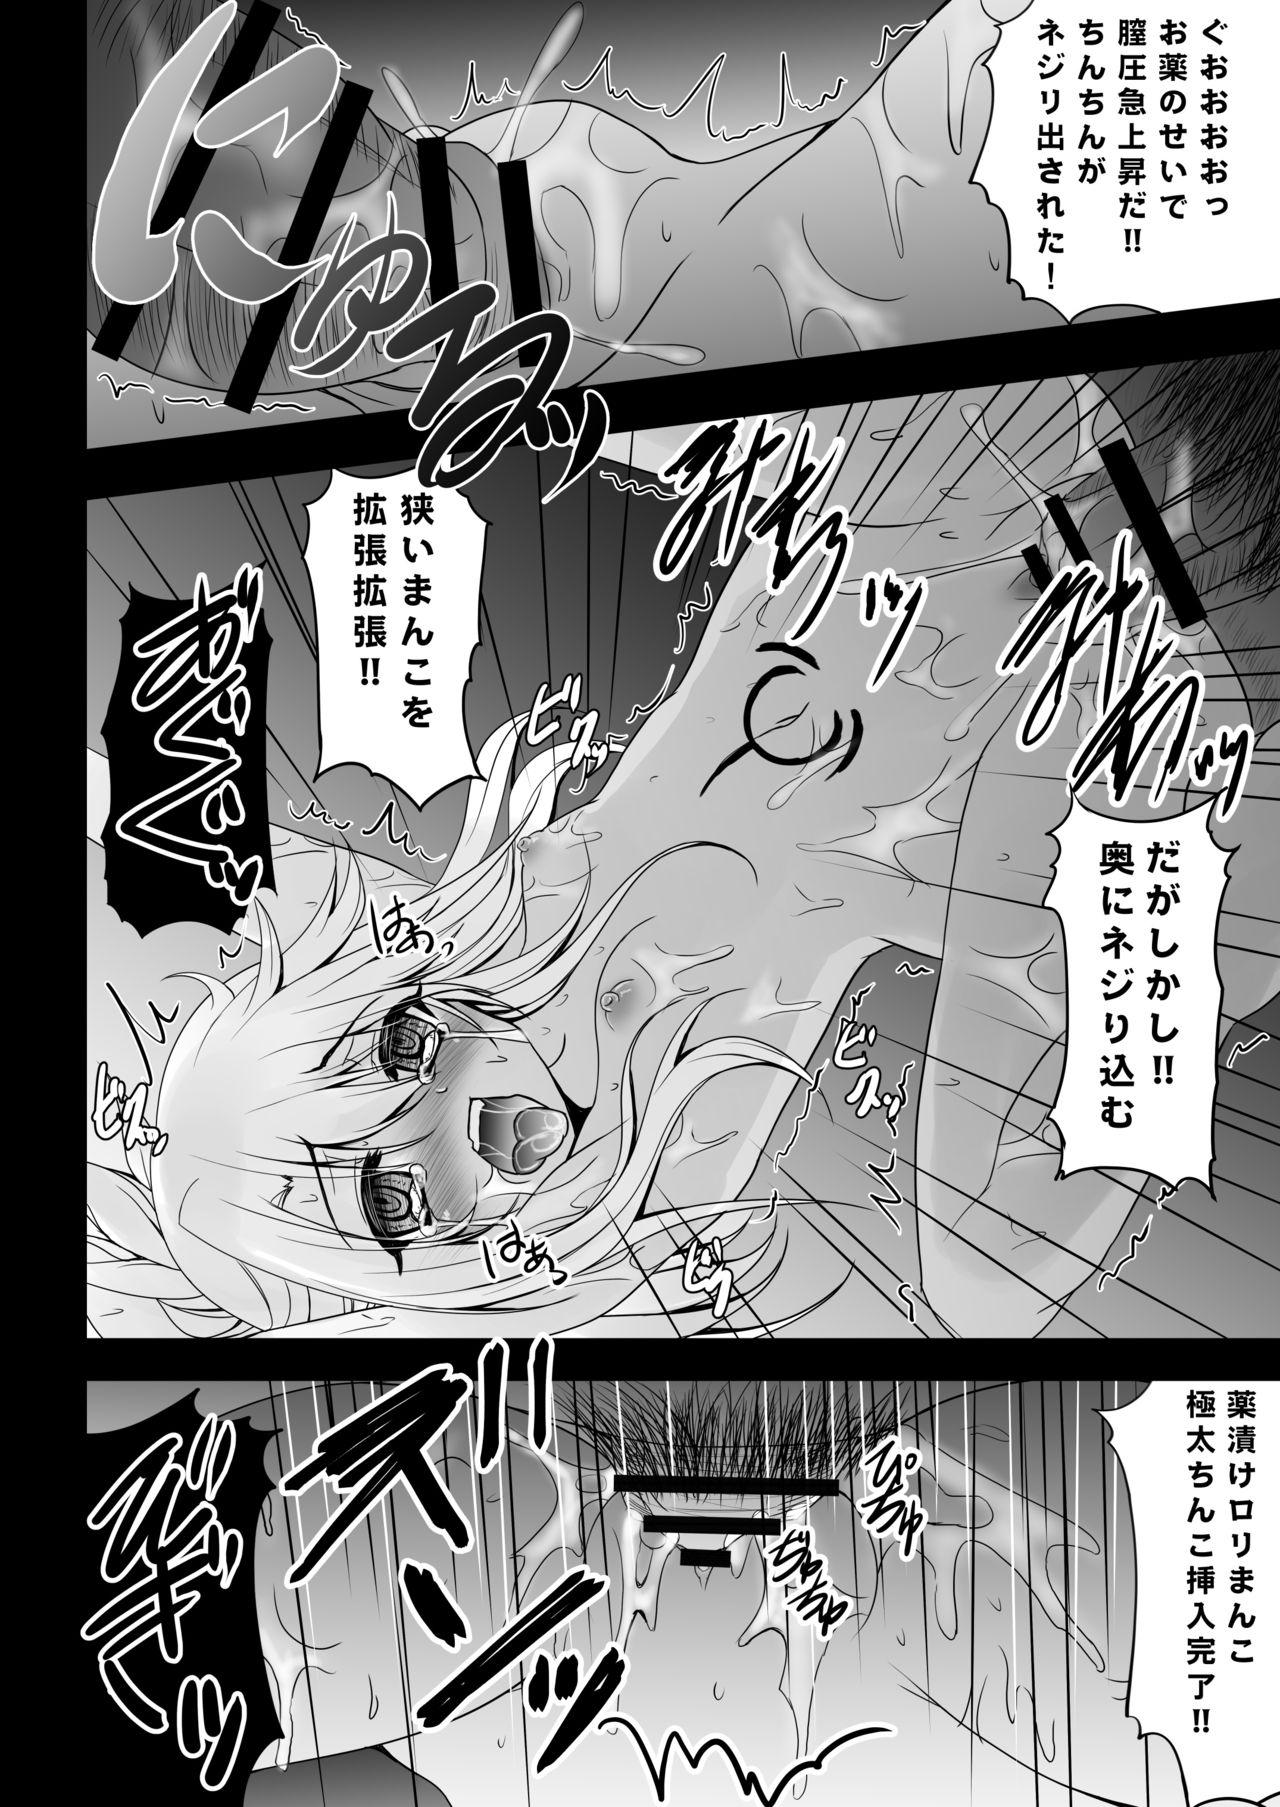 Babe Kusurizuke Kuro no Susume - Fate kaleid liner prisma illya Mas - Page 11